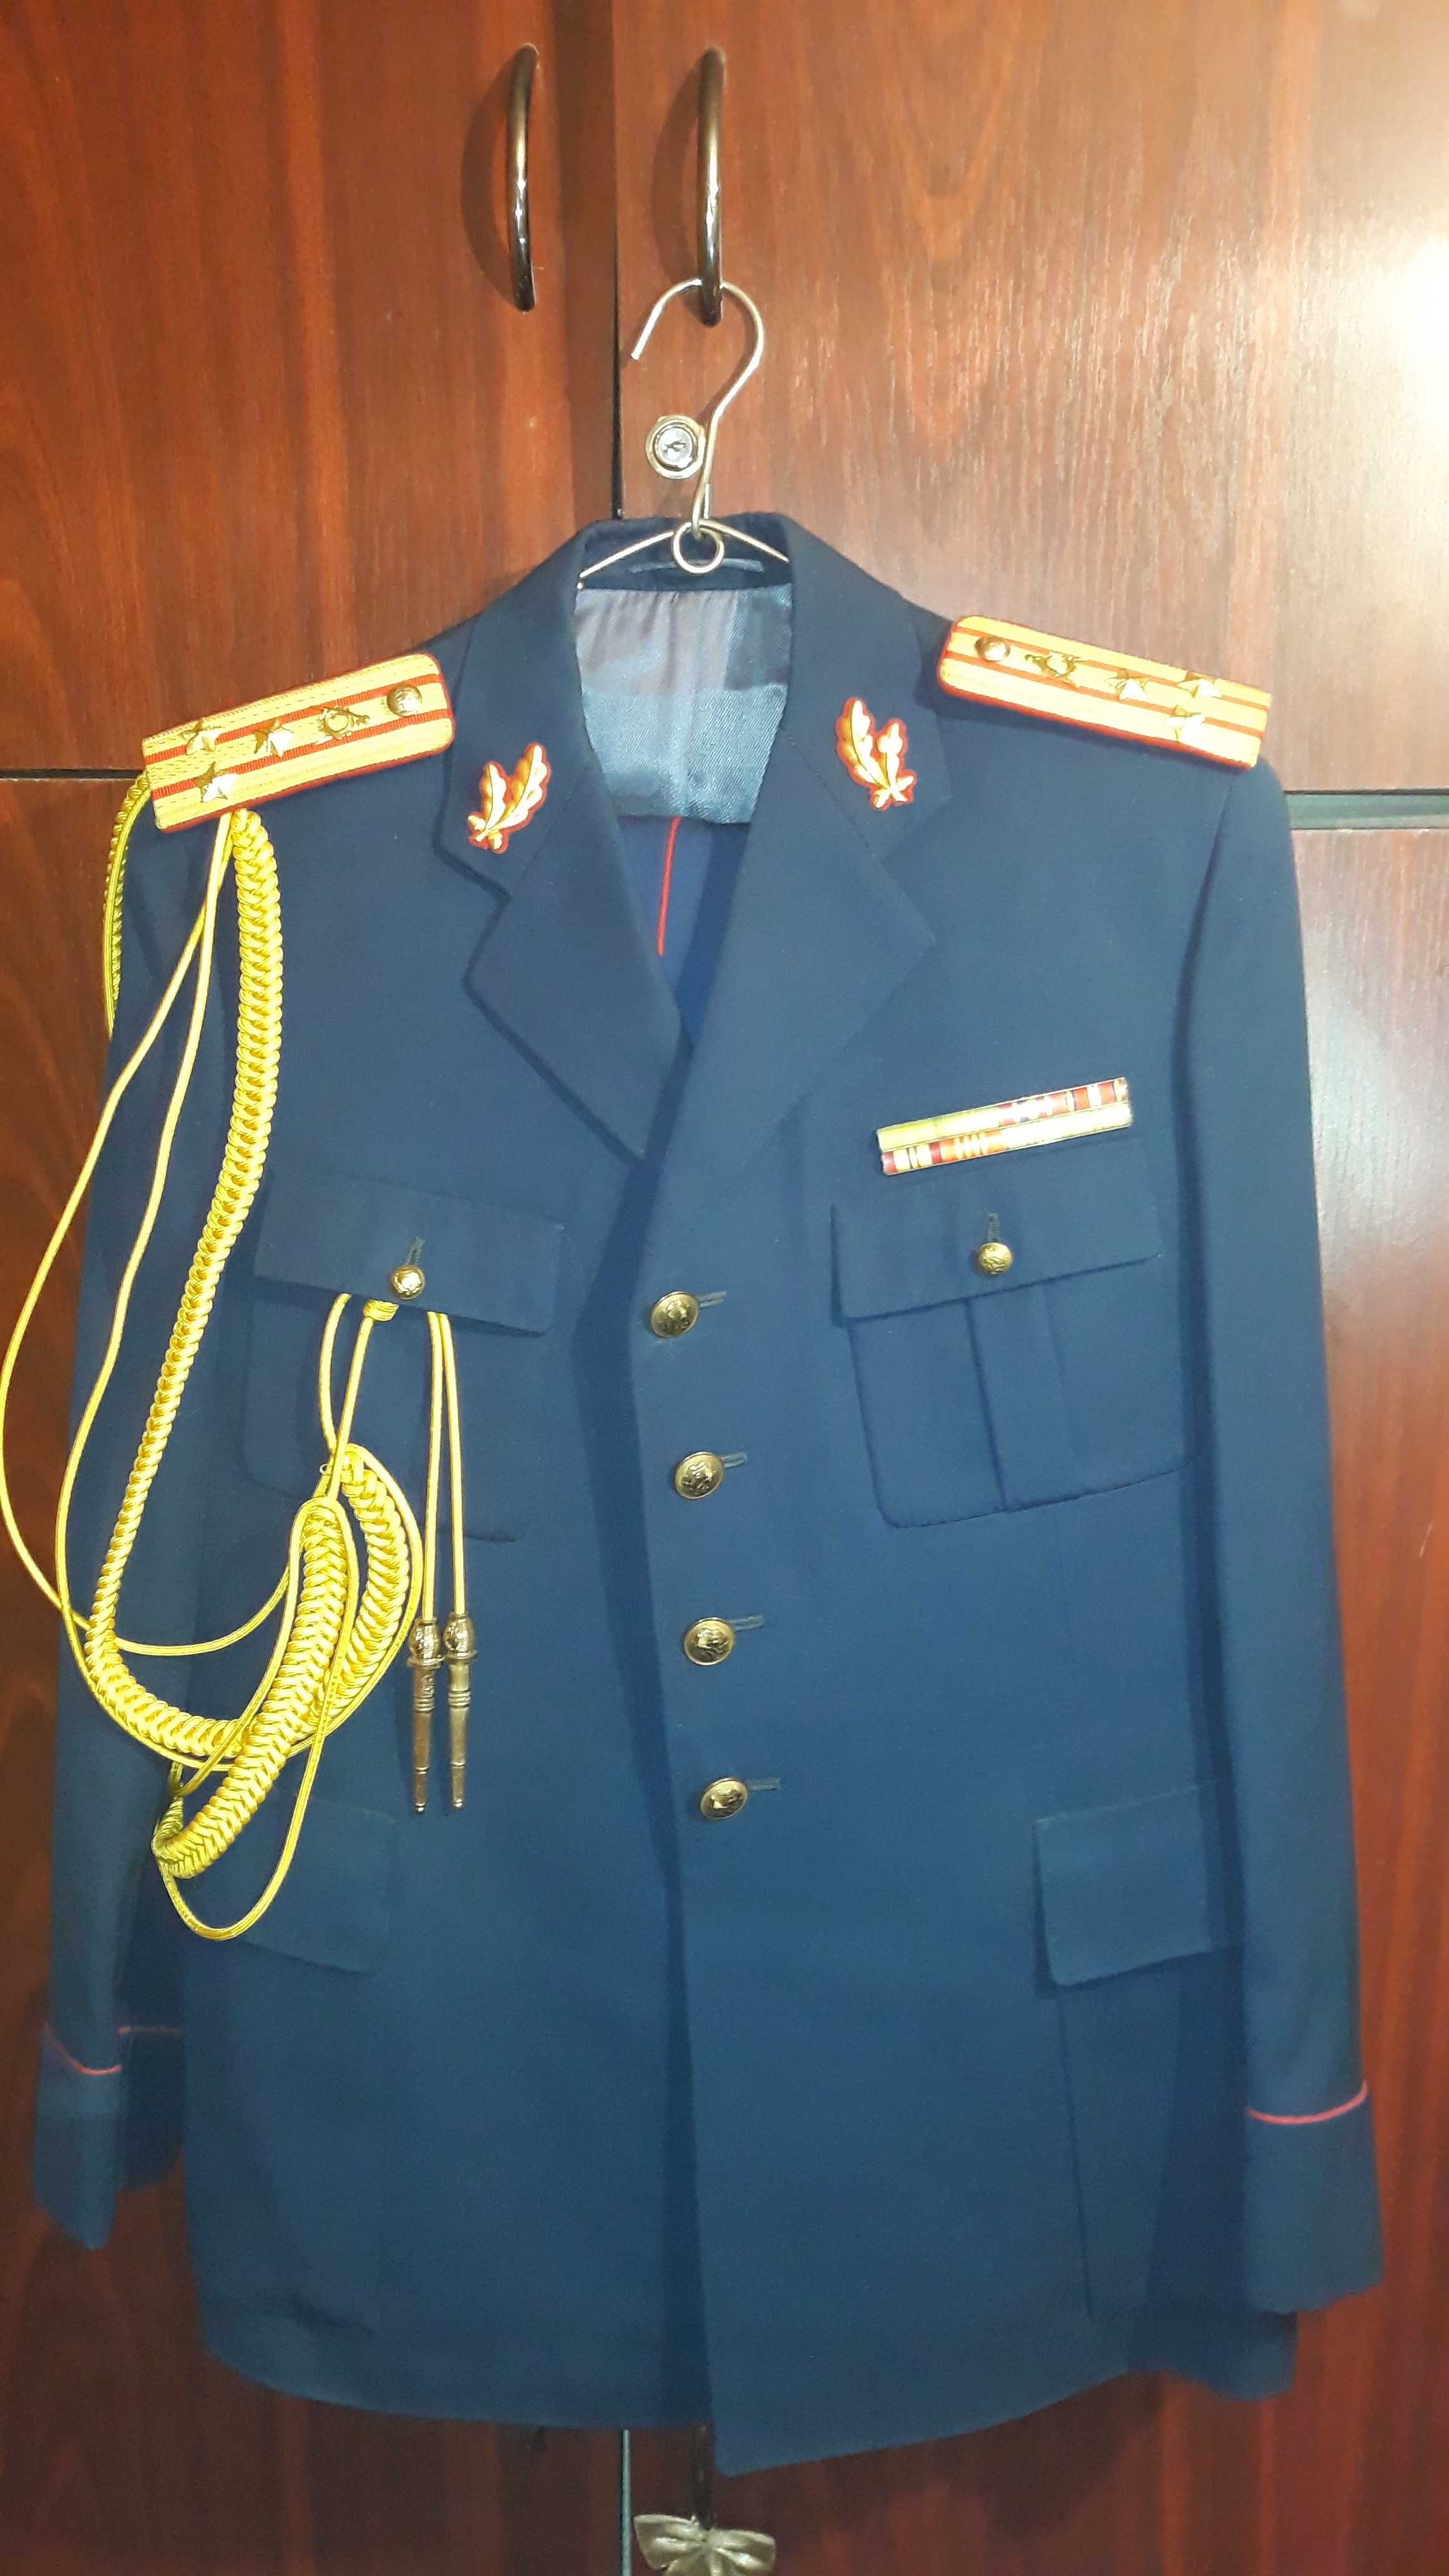 Costum de ceremonie / parada ofiter ( colonel ) perioada comunista